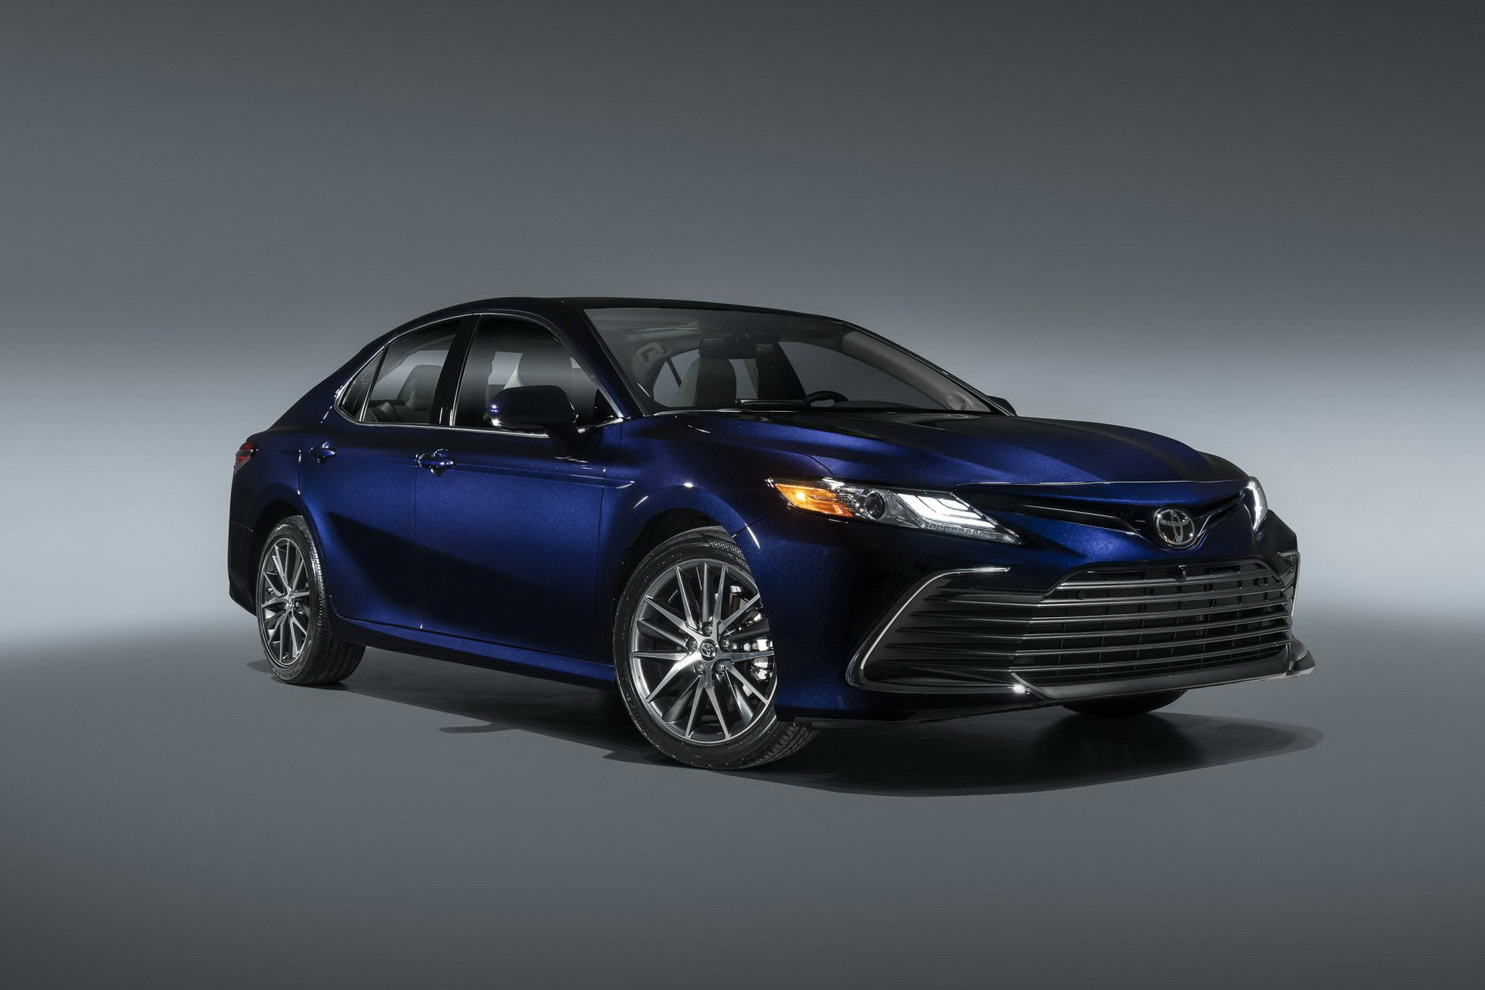 Ra mắt Toyota Camry 2021: Bổ sung công nghệ an toàn, đấu Honda Accord và Mazda6